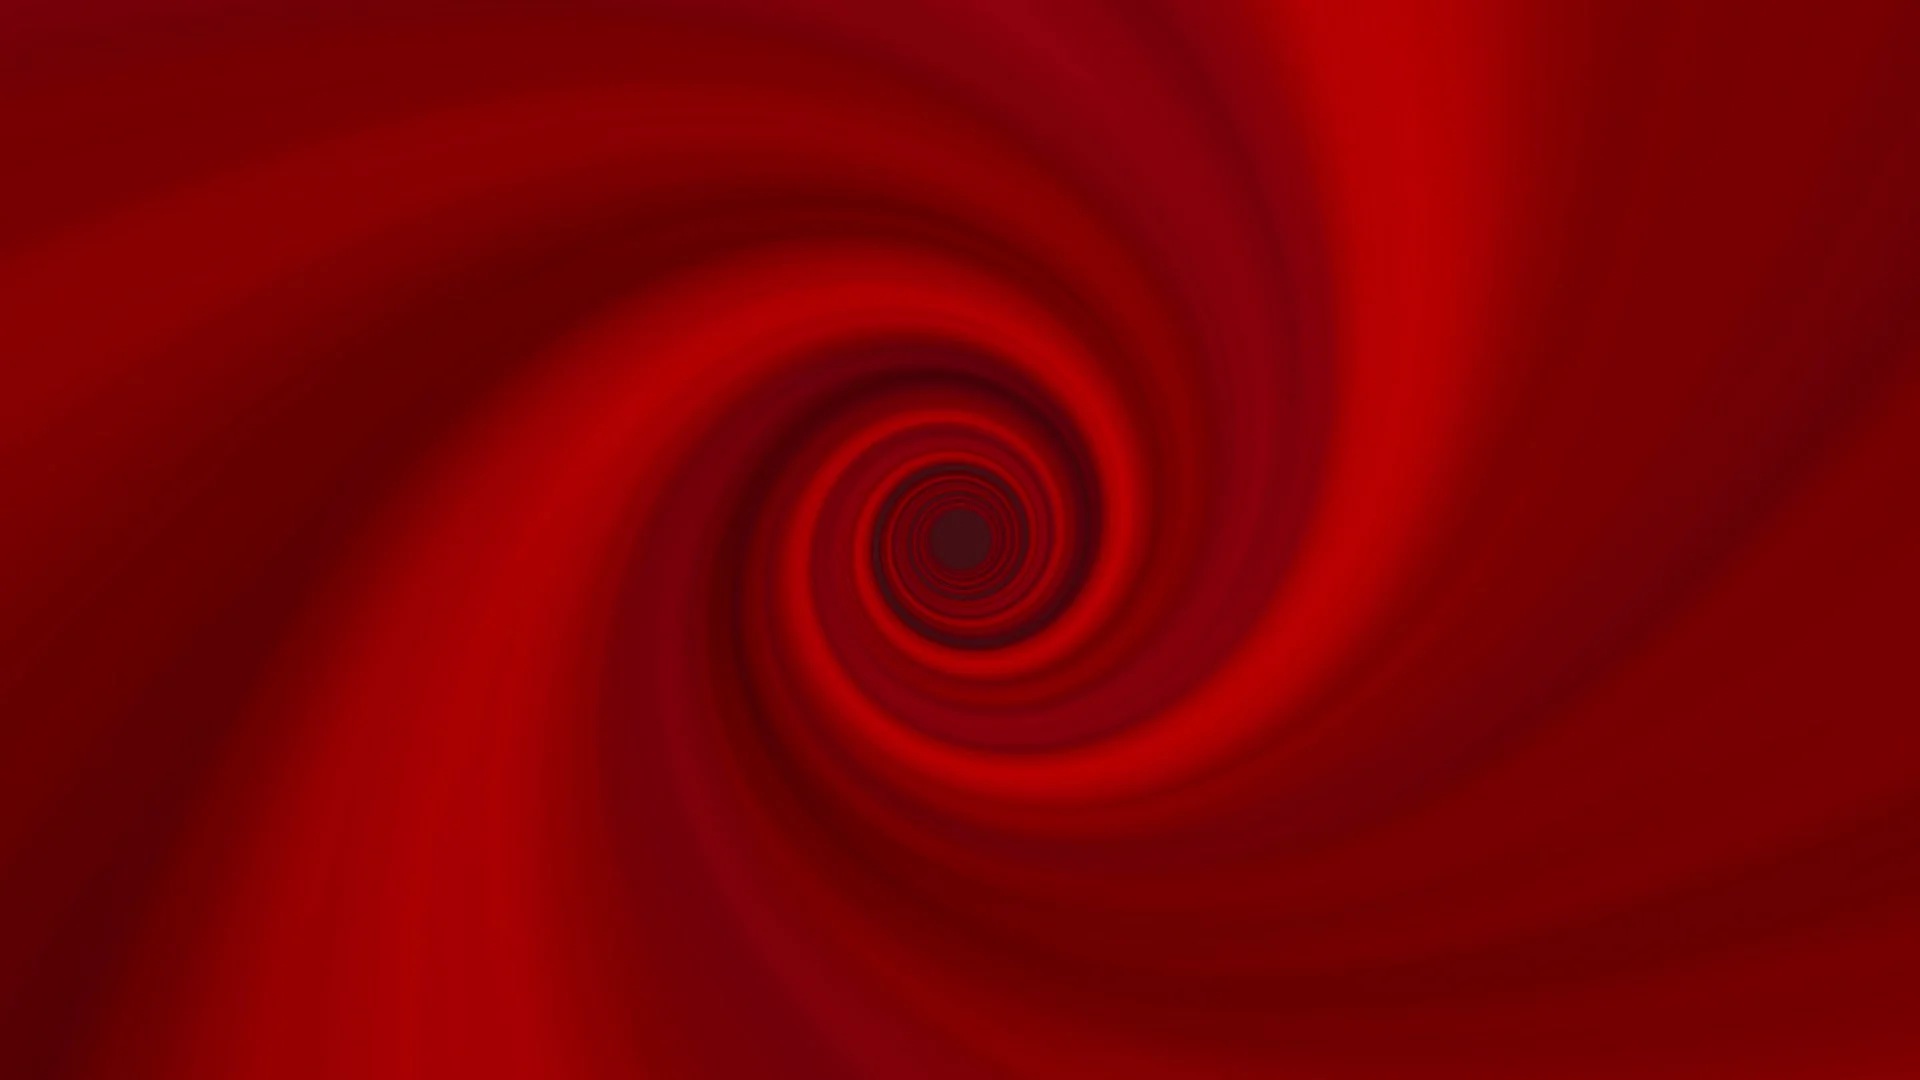 red swirls background